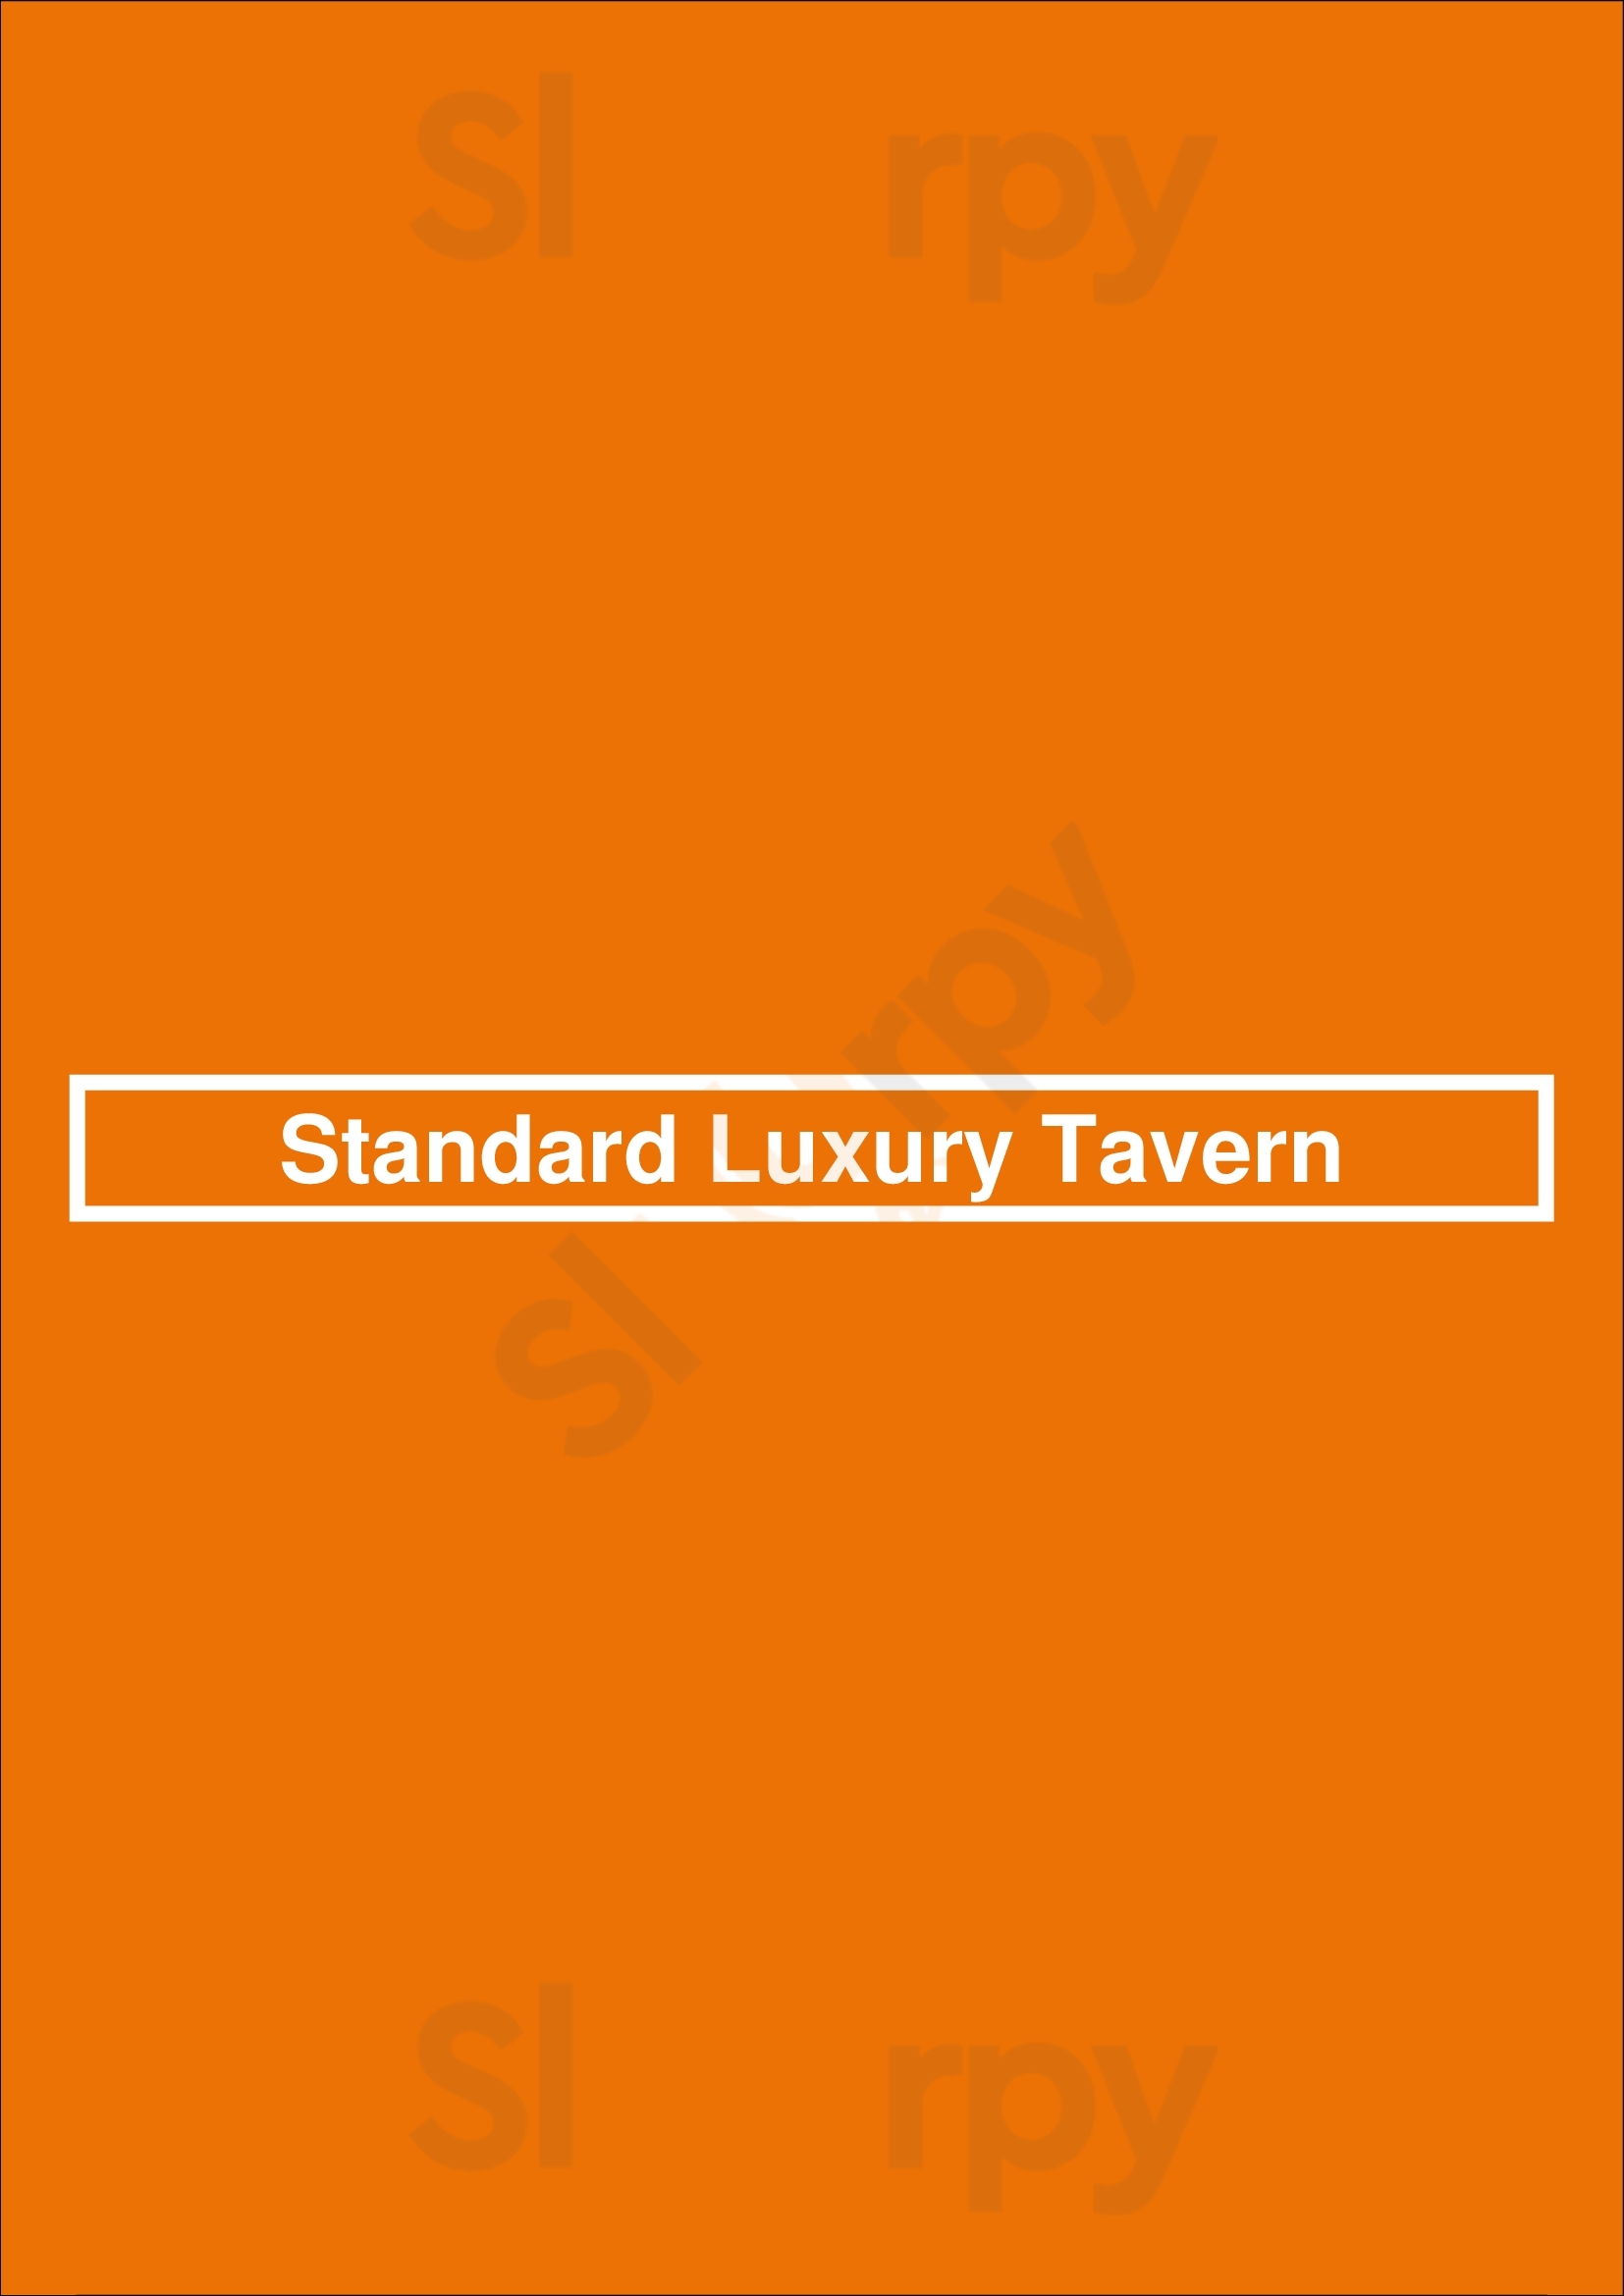 Standard Luxury Tavern Ottawa Menu - 1